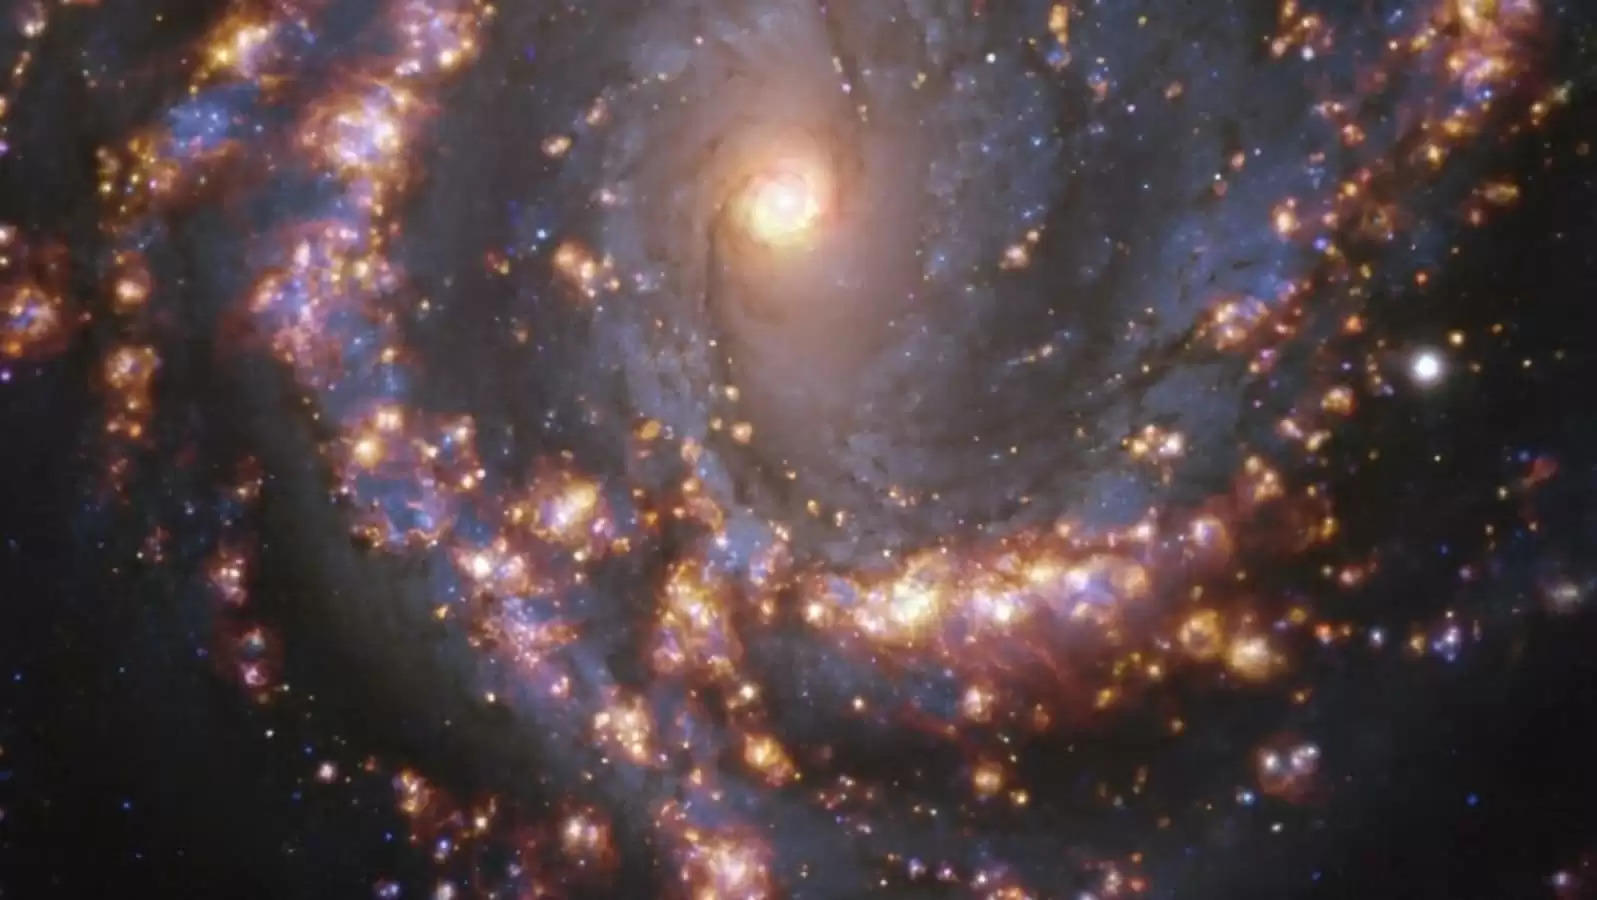 खगोल विज्ञान के इतिहास में पहली बार 9 तारे जैसी वस्तुएं दिखाई दीं और फिर गायब हो गईं